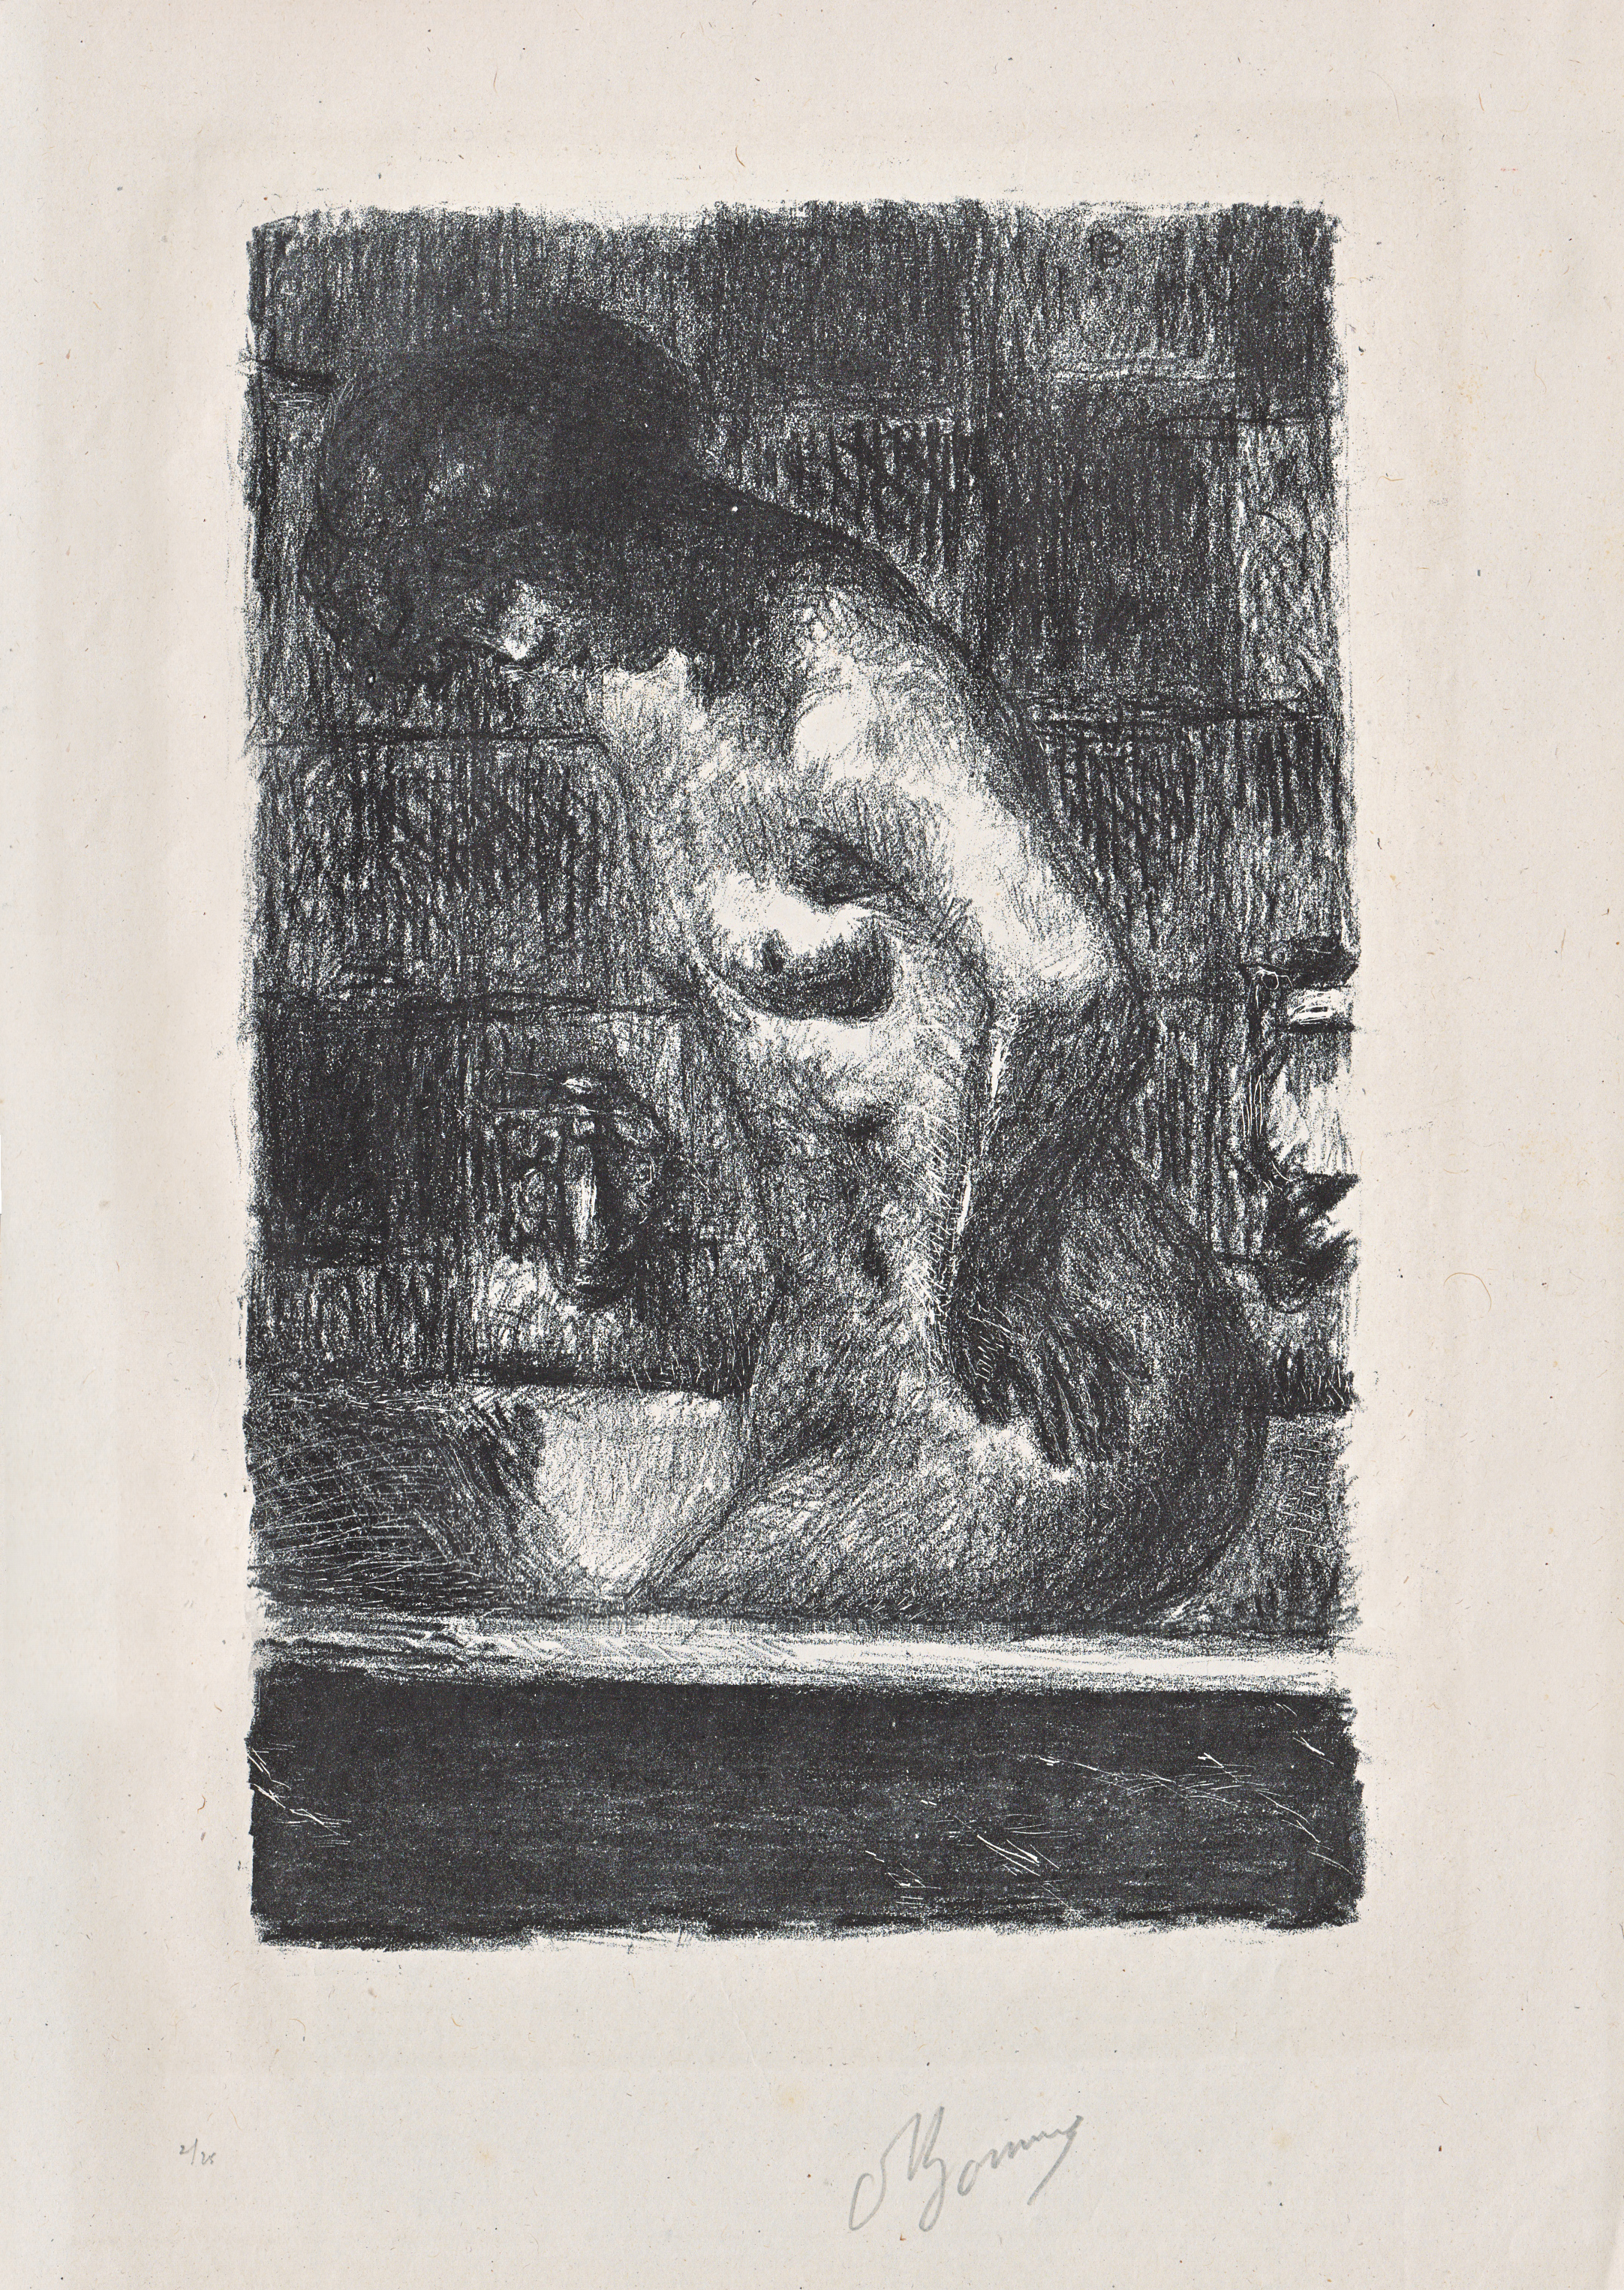 Bonnard, Femme debout dans sa Baignoire, lithograph, 1925